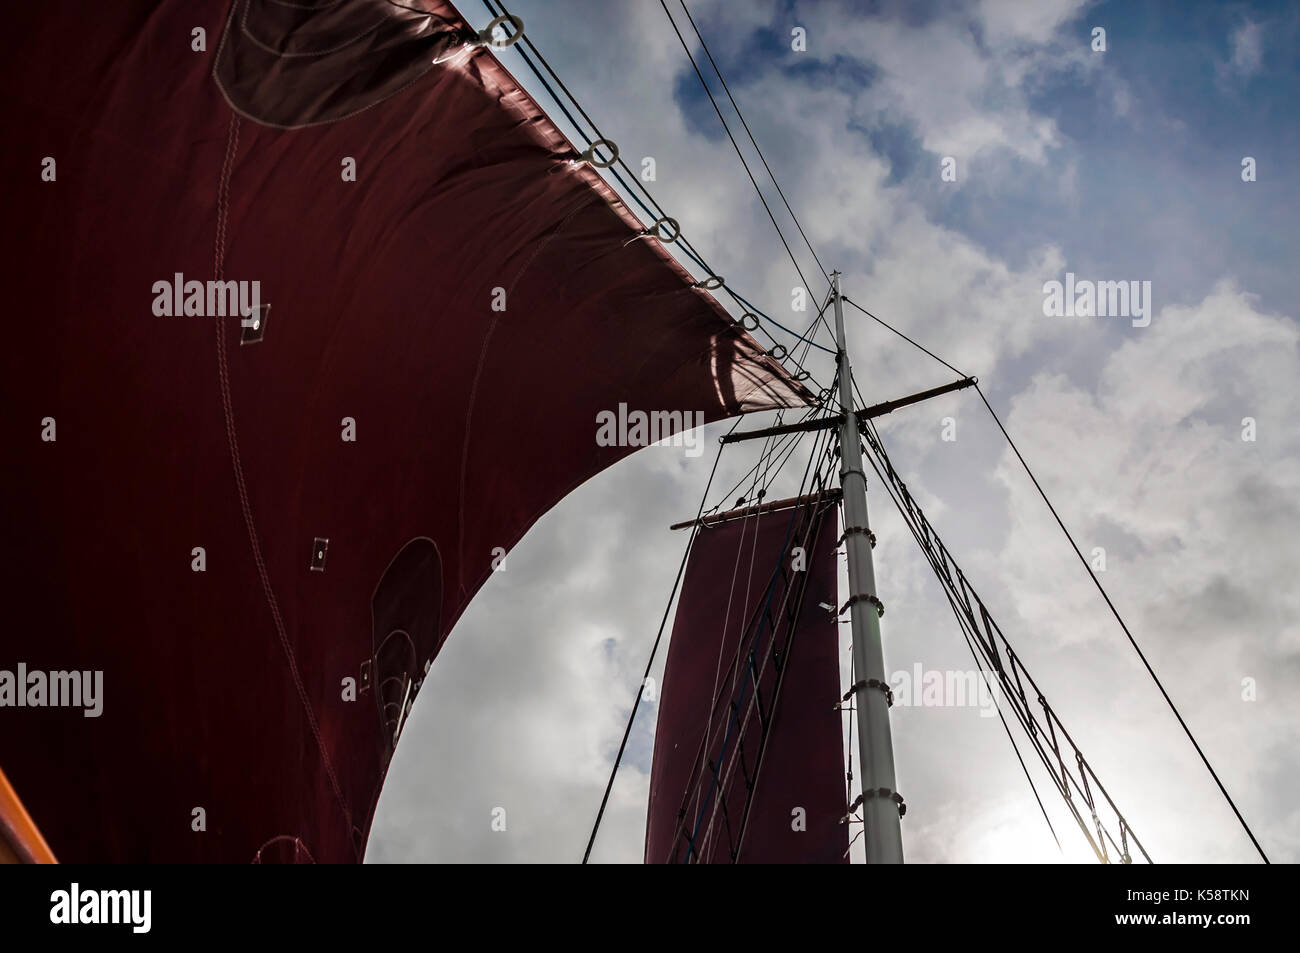 Traditionelle Gaffel manipulierten Segelboot Nahaufnahme von Segel und Mast gegen den Himmel. Stockfoto